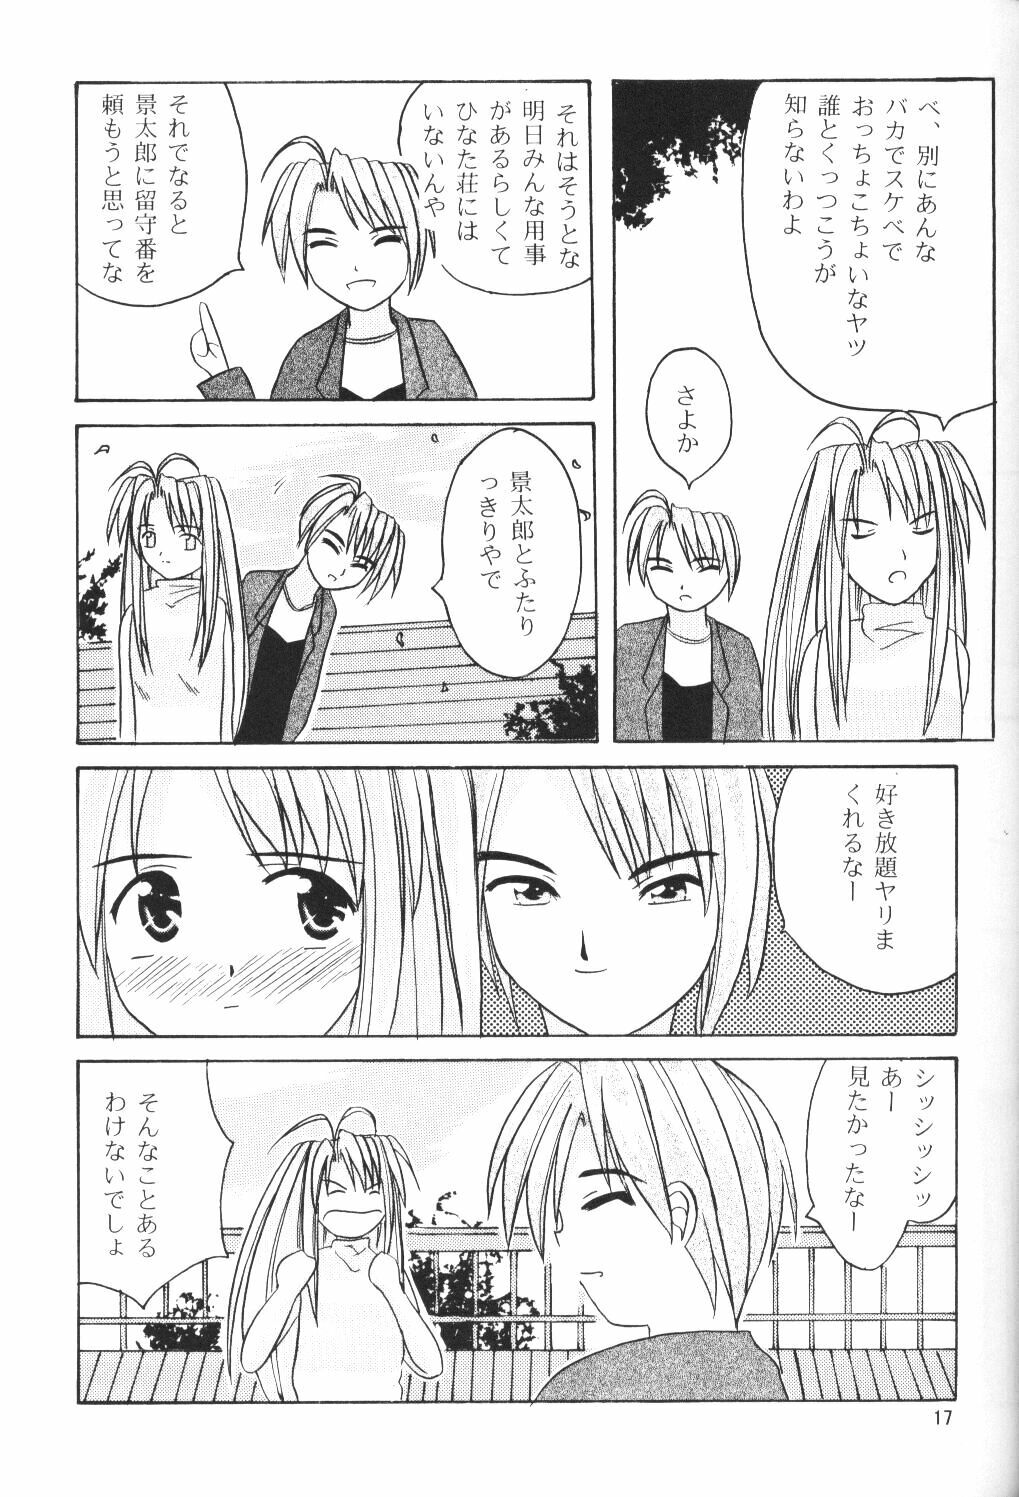 (SC7) [Hikari no Shinden (Koukami Sayana)] Naru Moe 2 (Love Hina) page 15 full